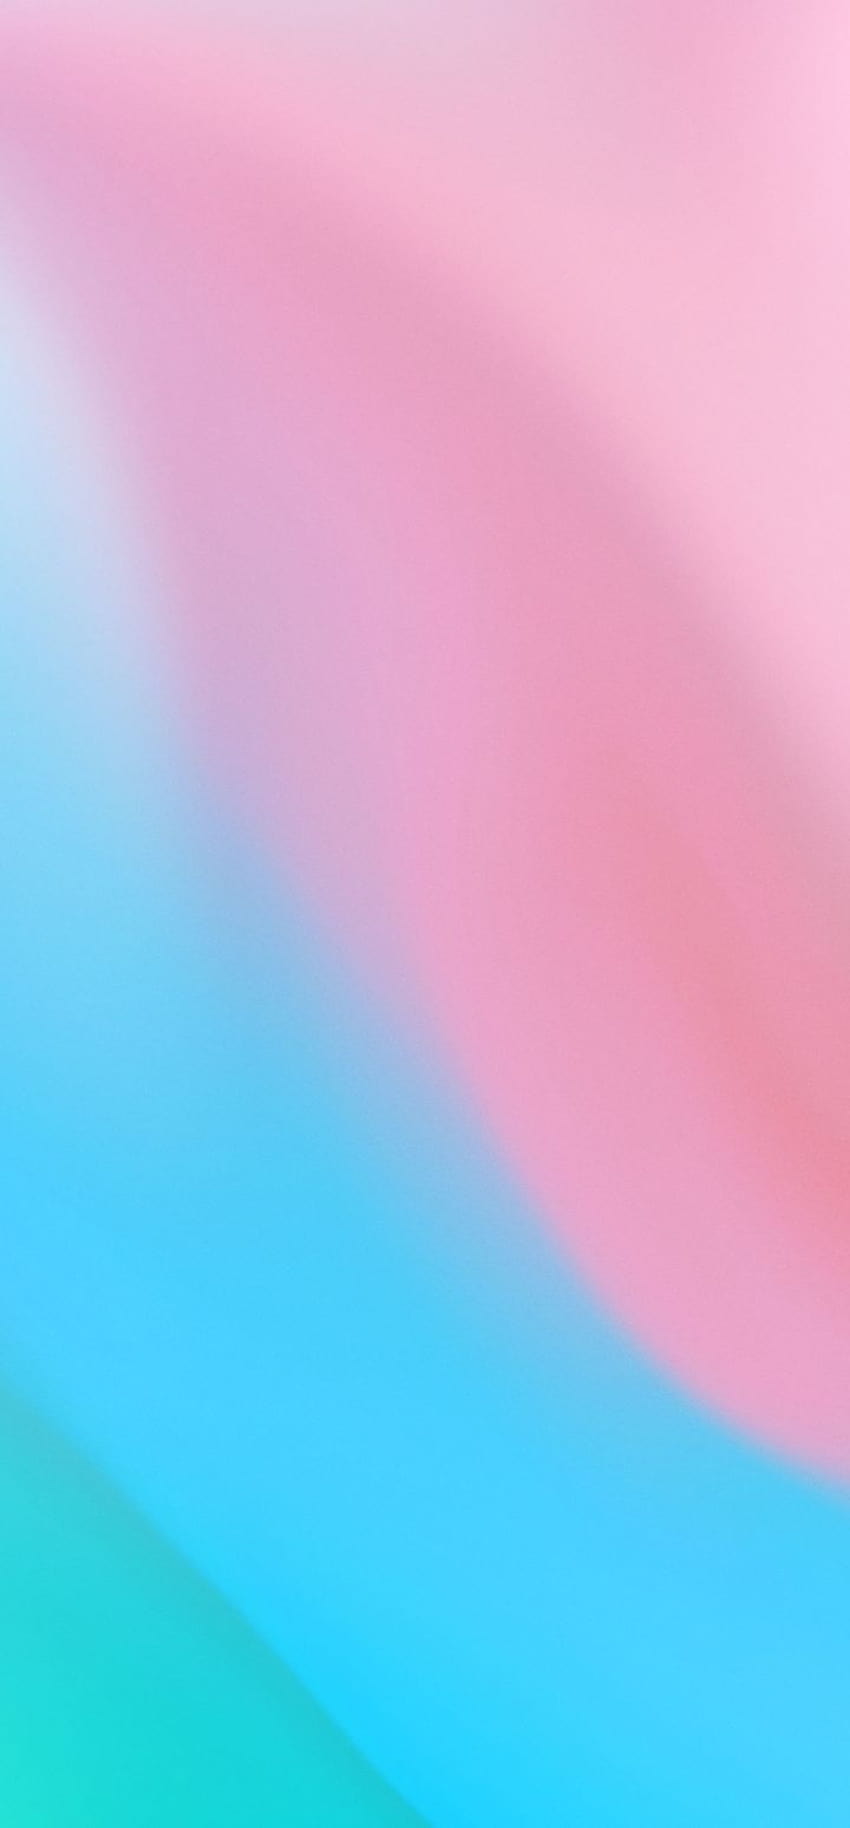 720x1548 Mieszanka różowych i niebieskich kolorów Rozdzielczość 720x1548, mieszanka niebieskiego i różowego Tapeta na telefon HD